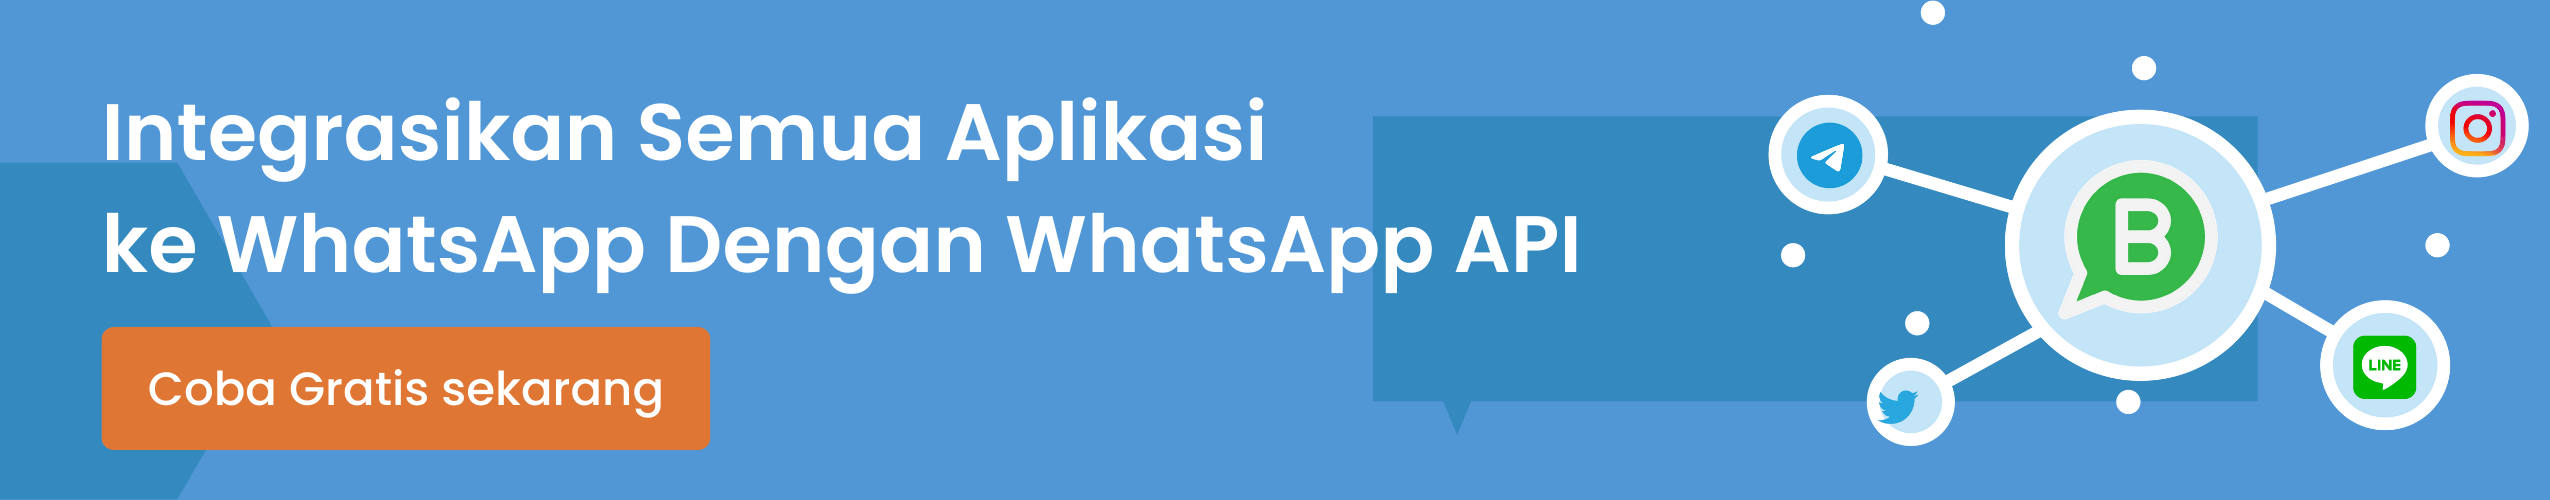 Barantum BSP WhatsApp Terbaik dan Mitra Resmi WhatsApp Terpercaya di Indonesia di Indonesia